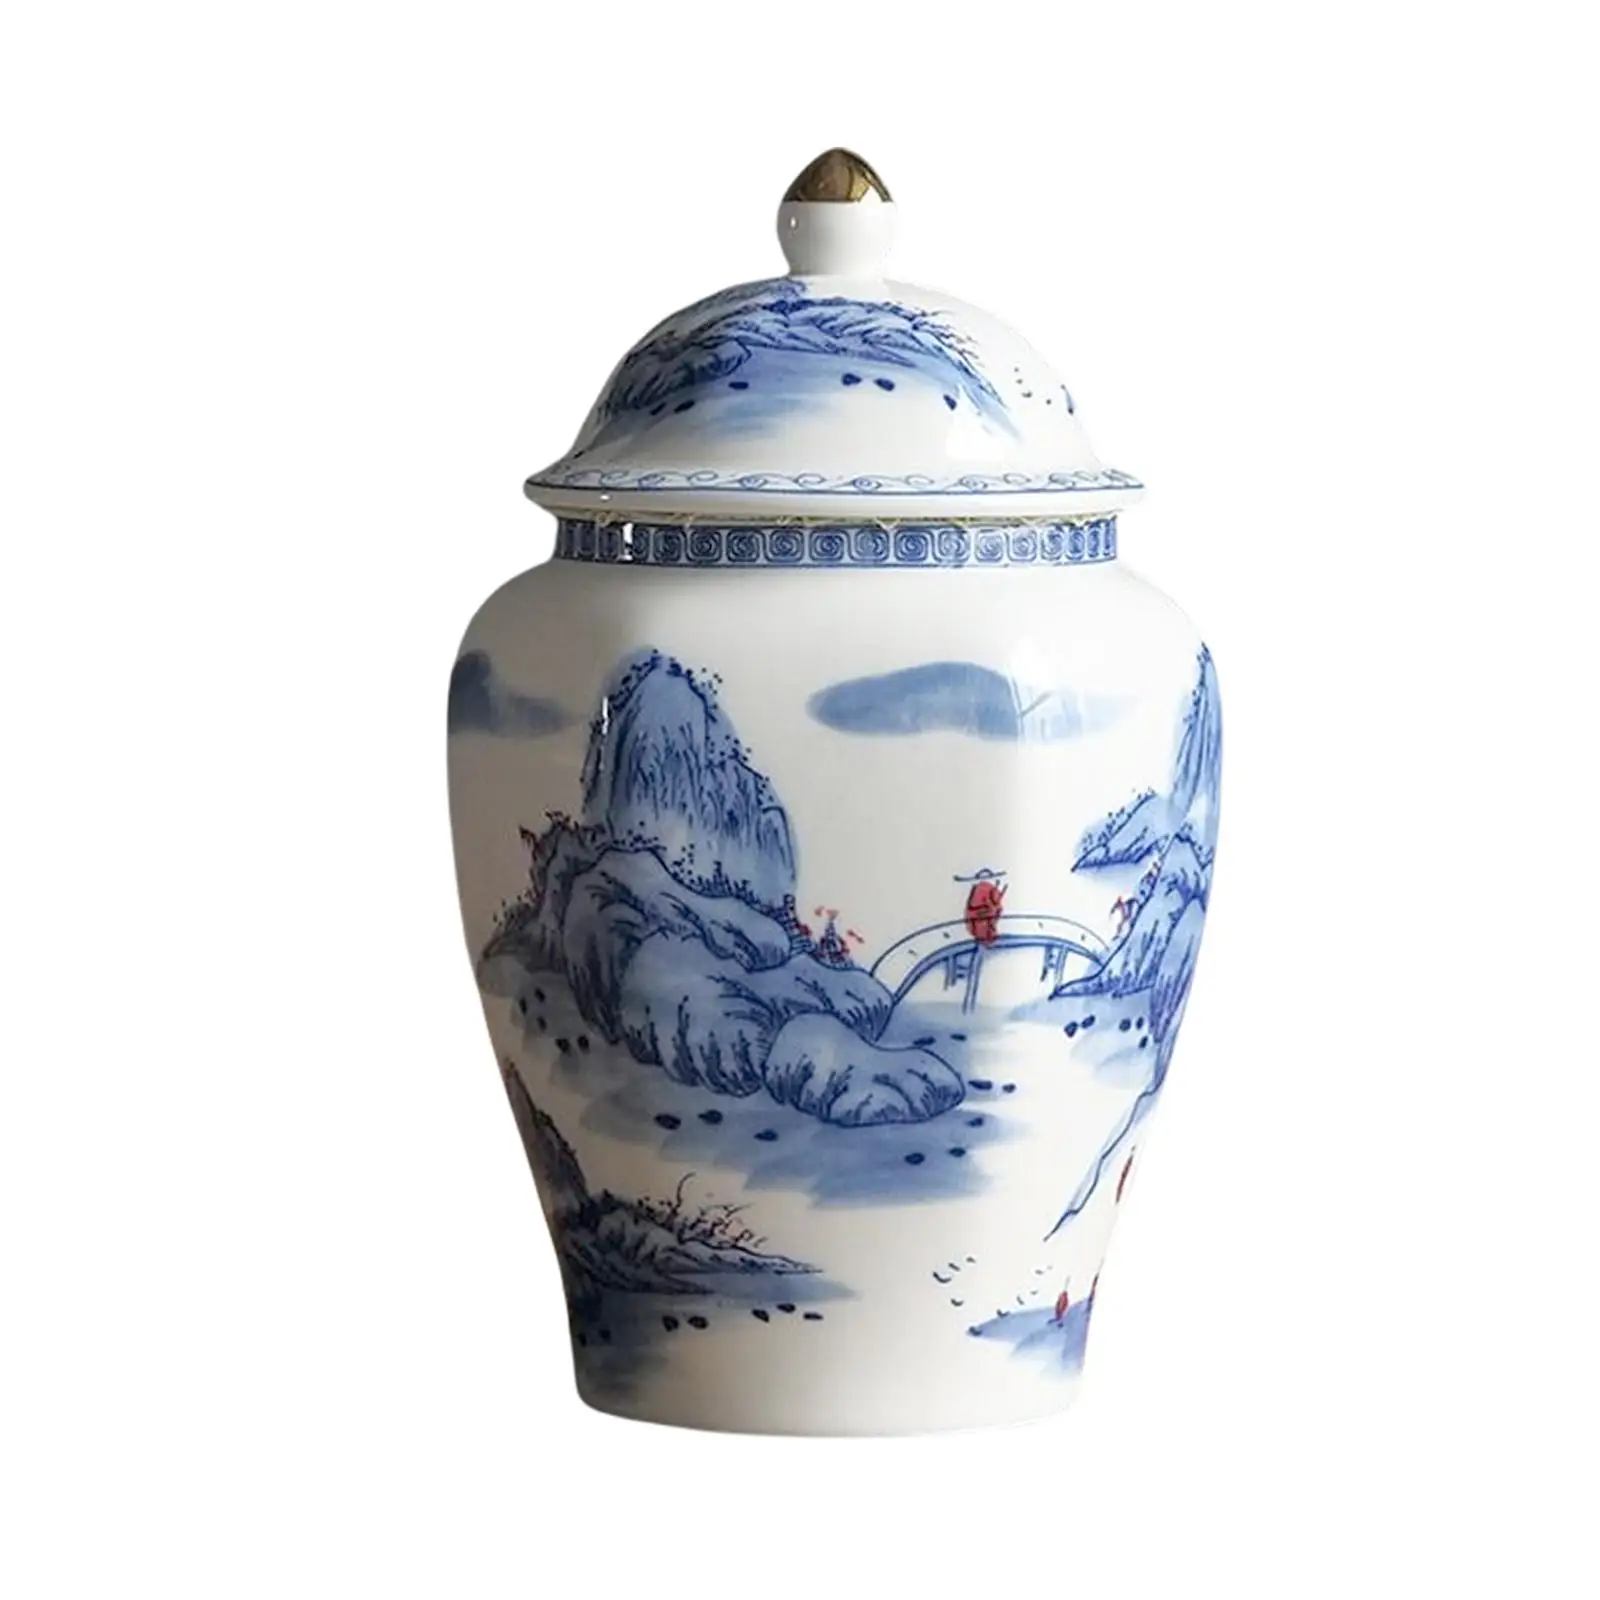 Ceramic Tea Jar with Lid Blue White Porcelain Gift for Desktop Home Decor